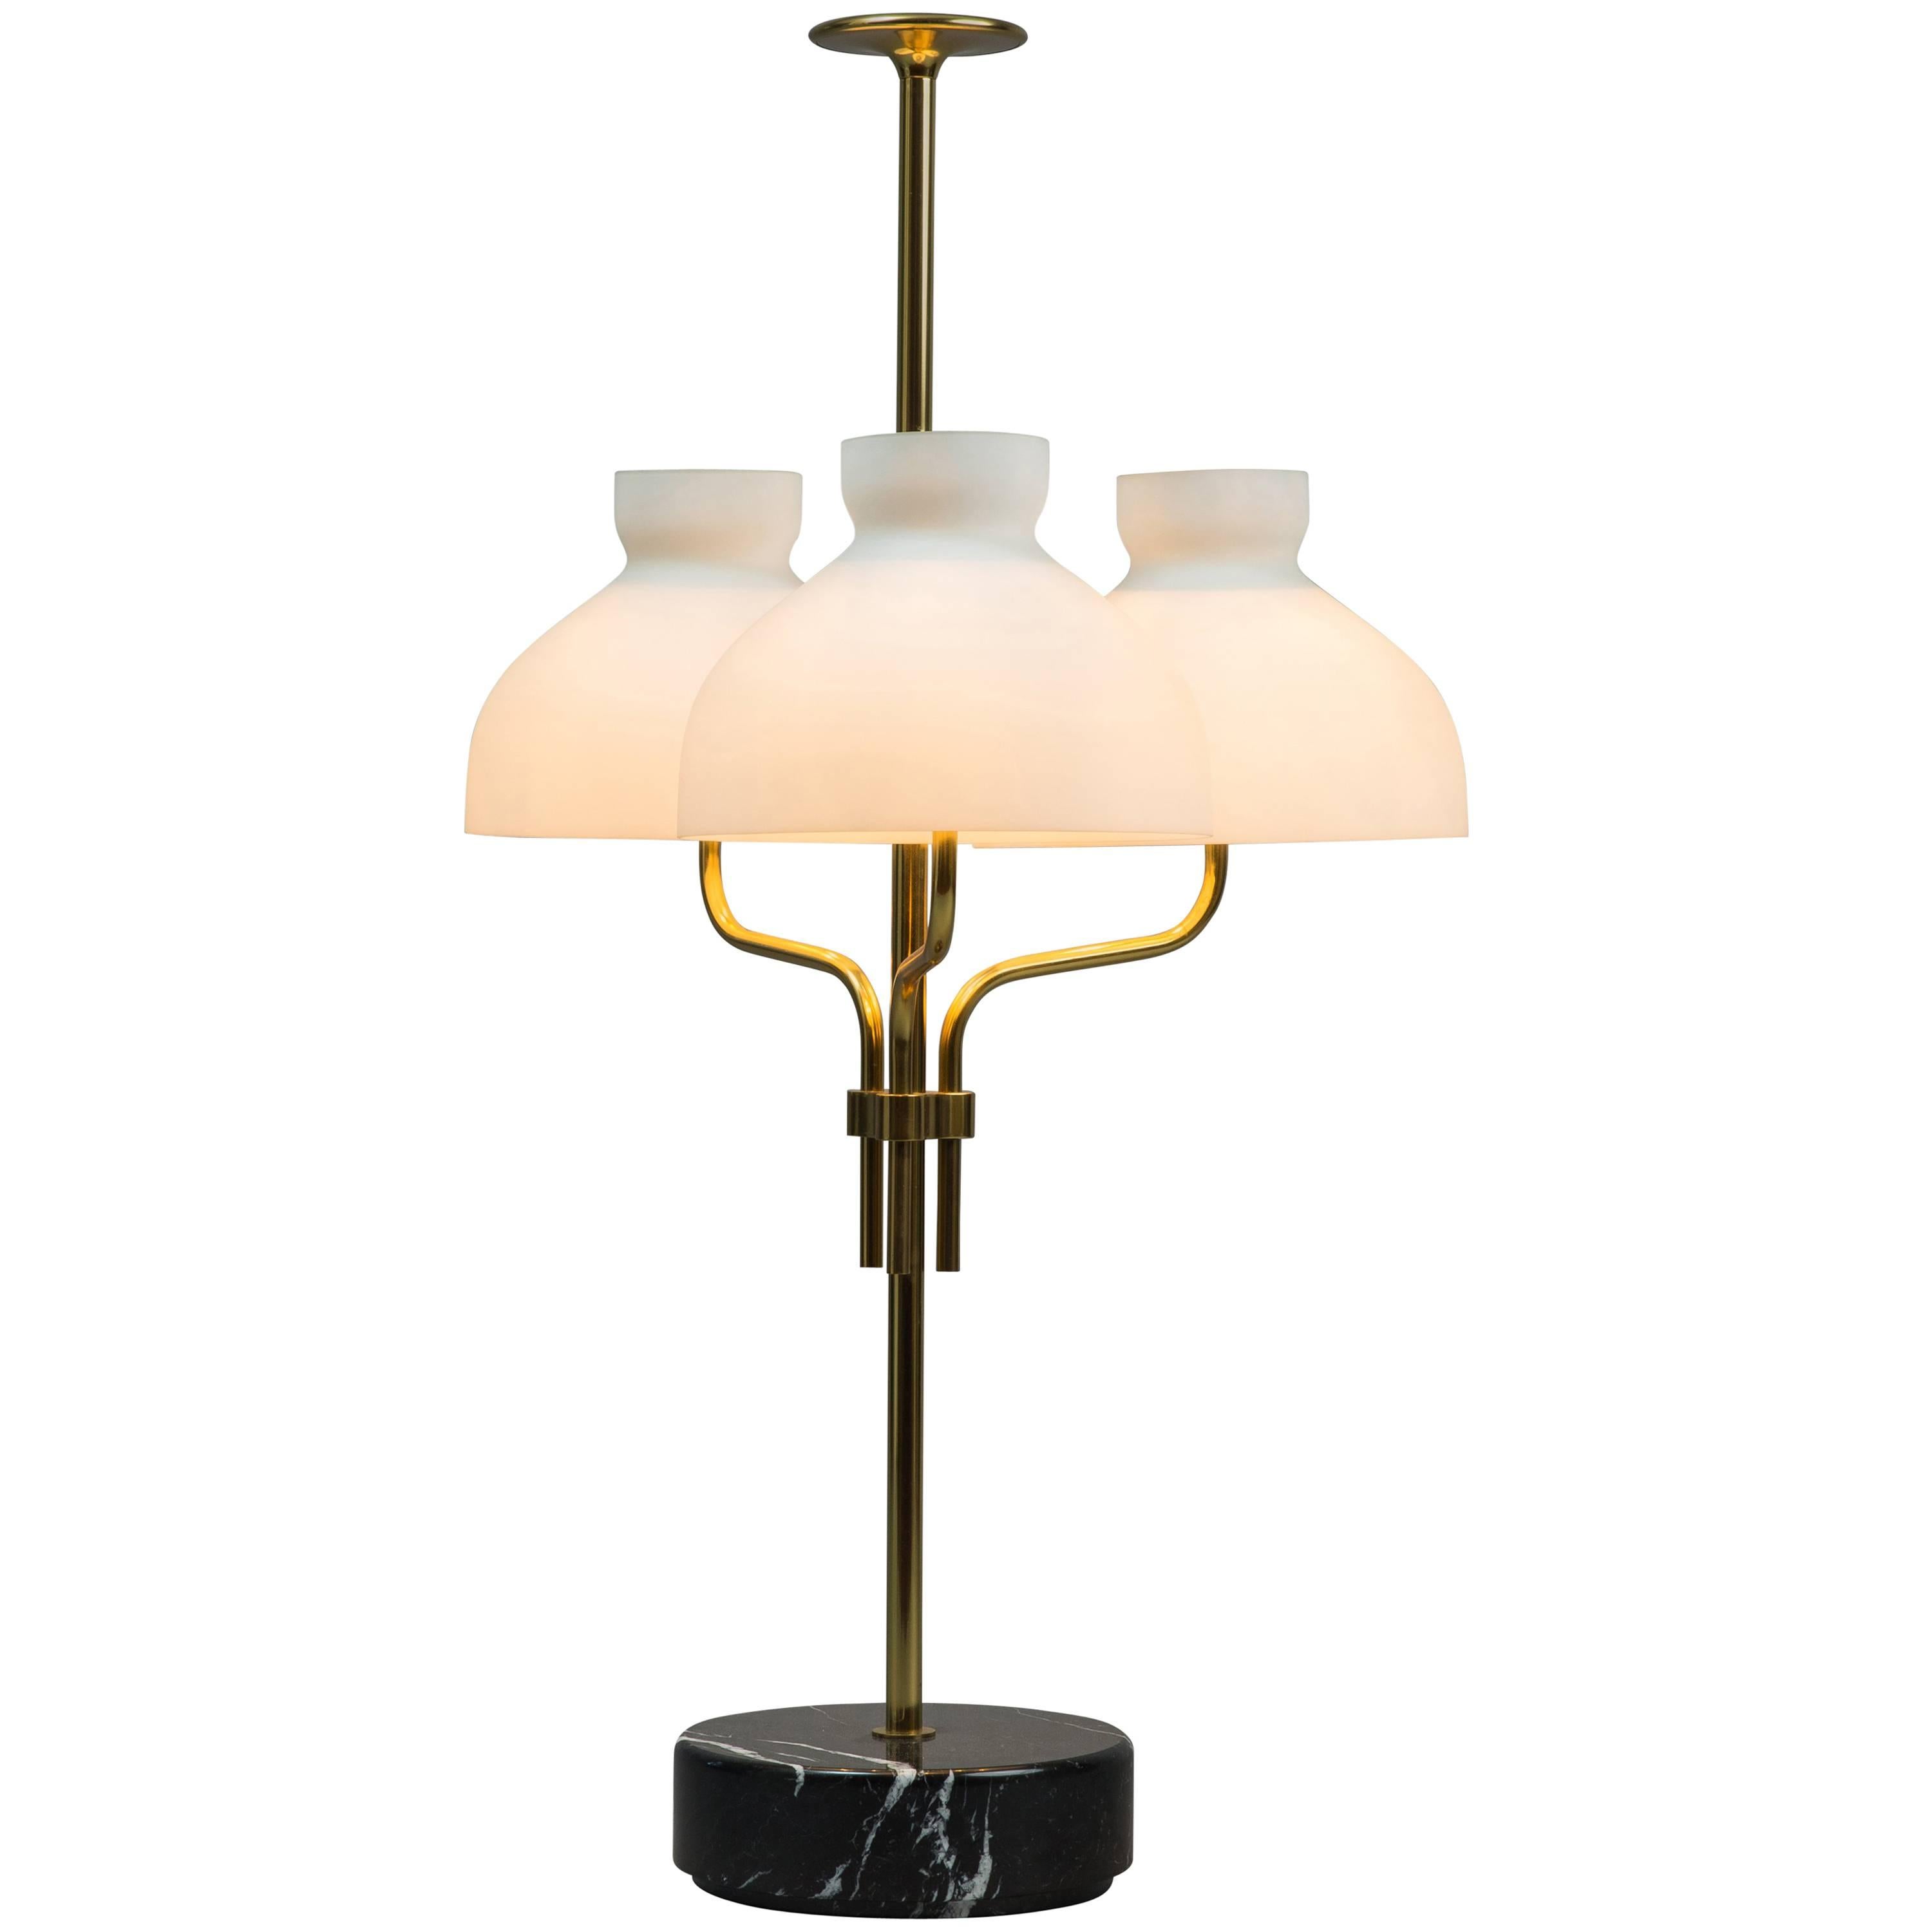 Ignazio Gardella "Arenzano Tre Fiamme" Large Table Lamp For Sale